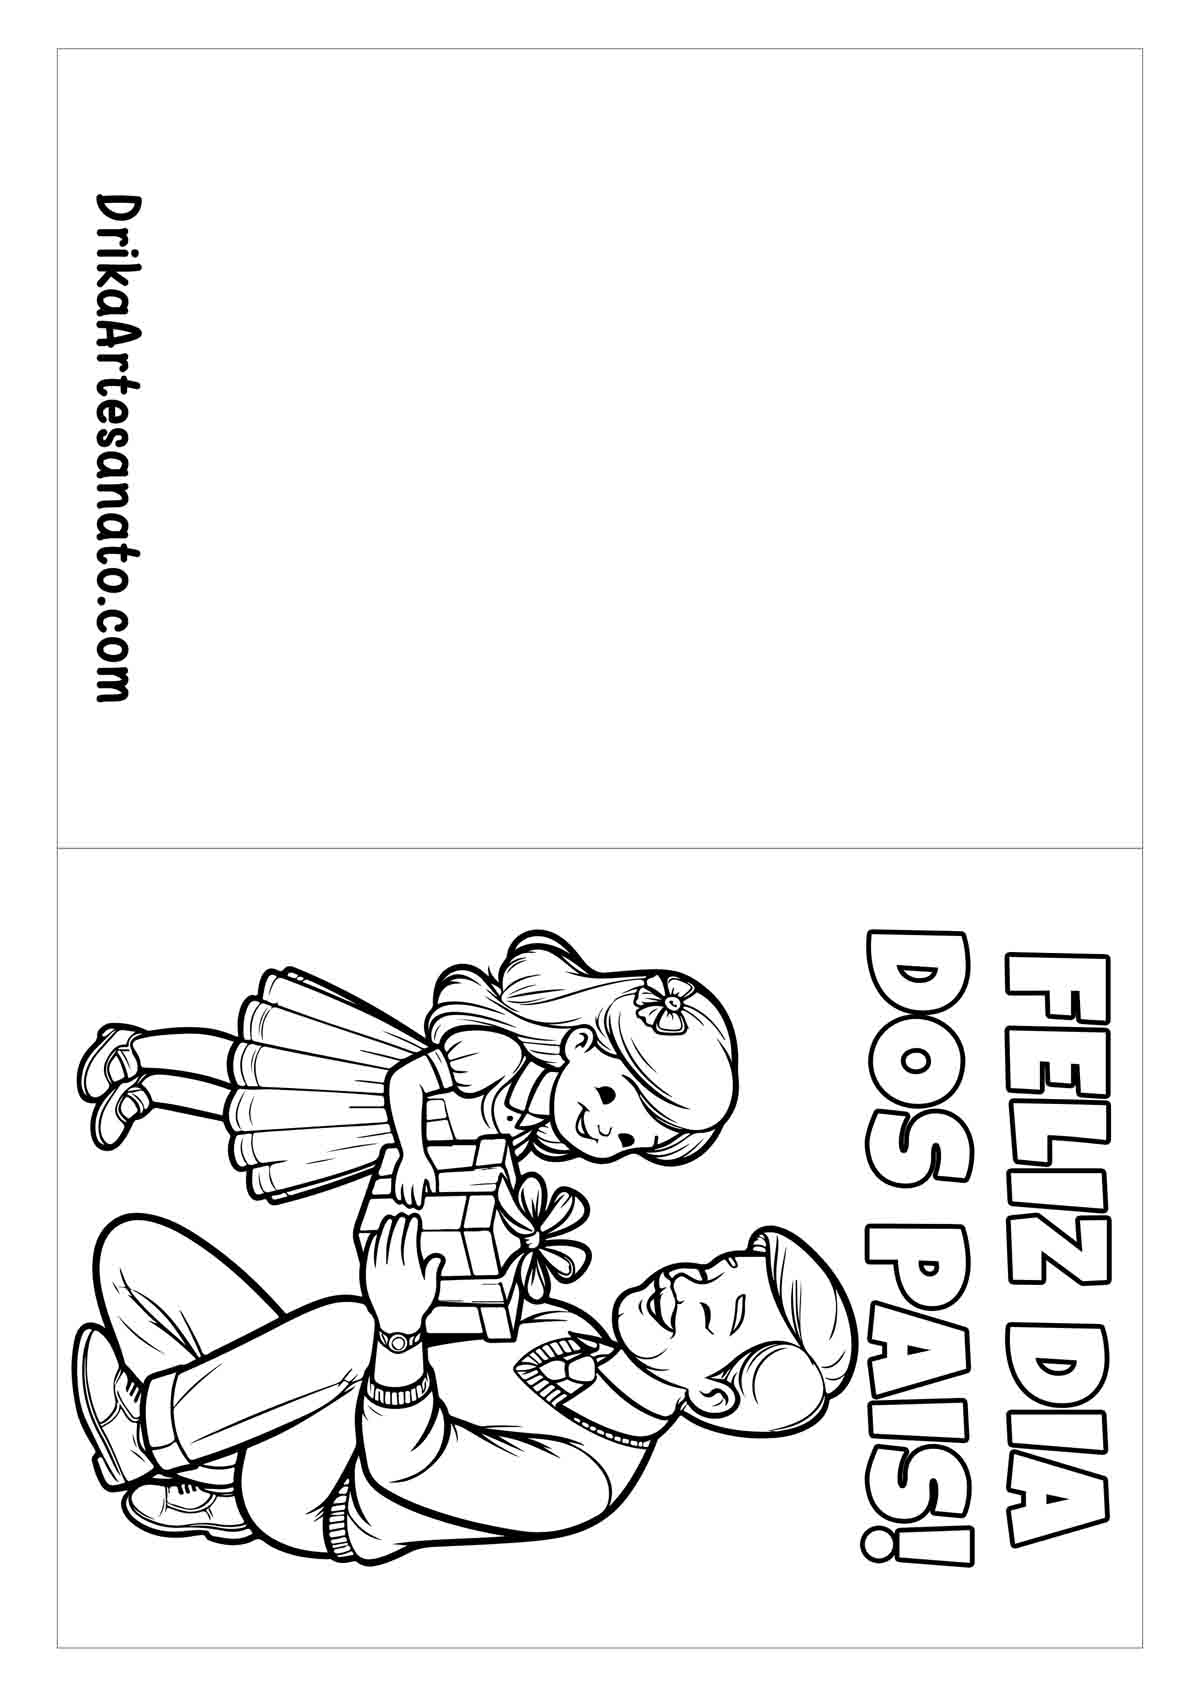 Cartão do Dia dos Pais para Imprimir